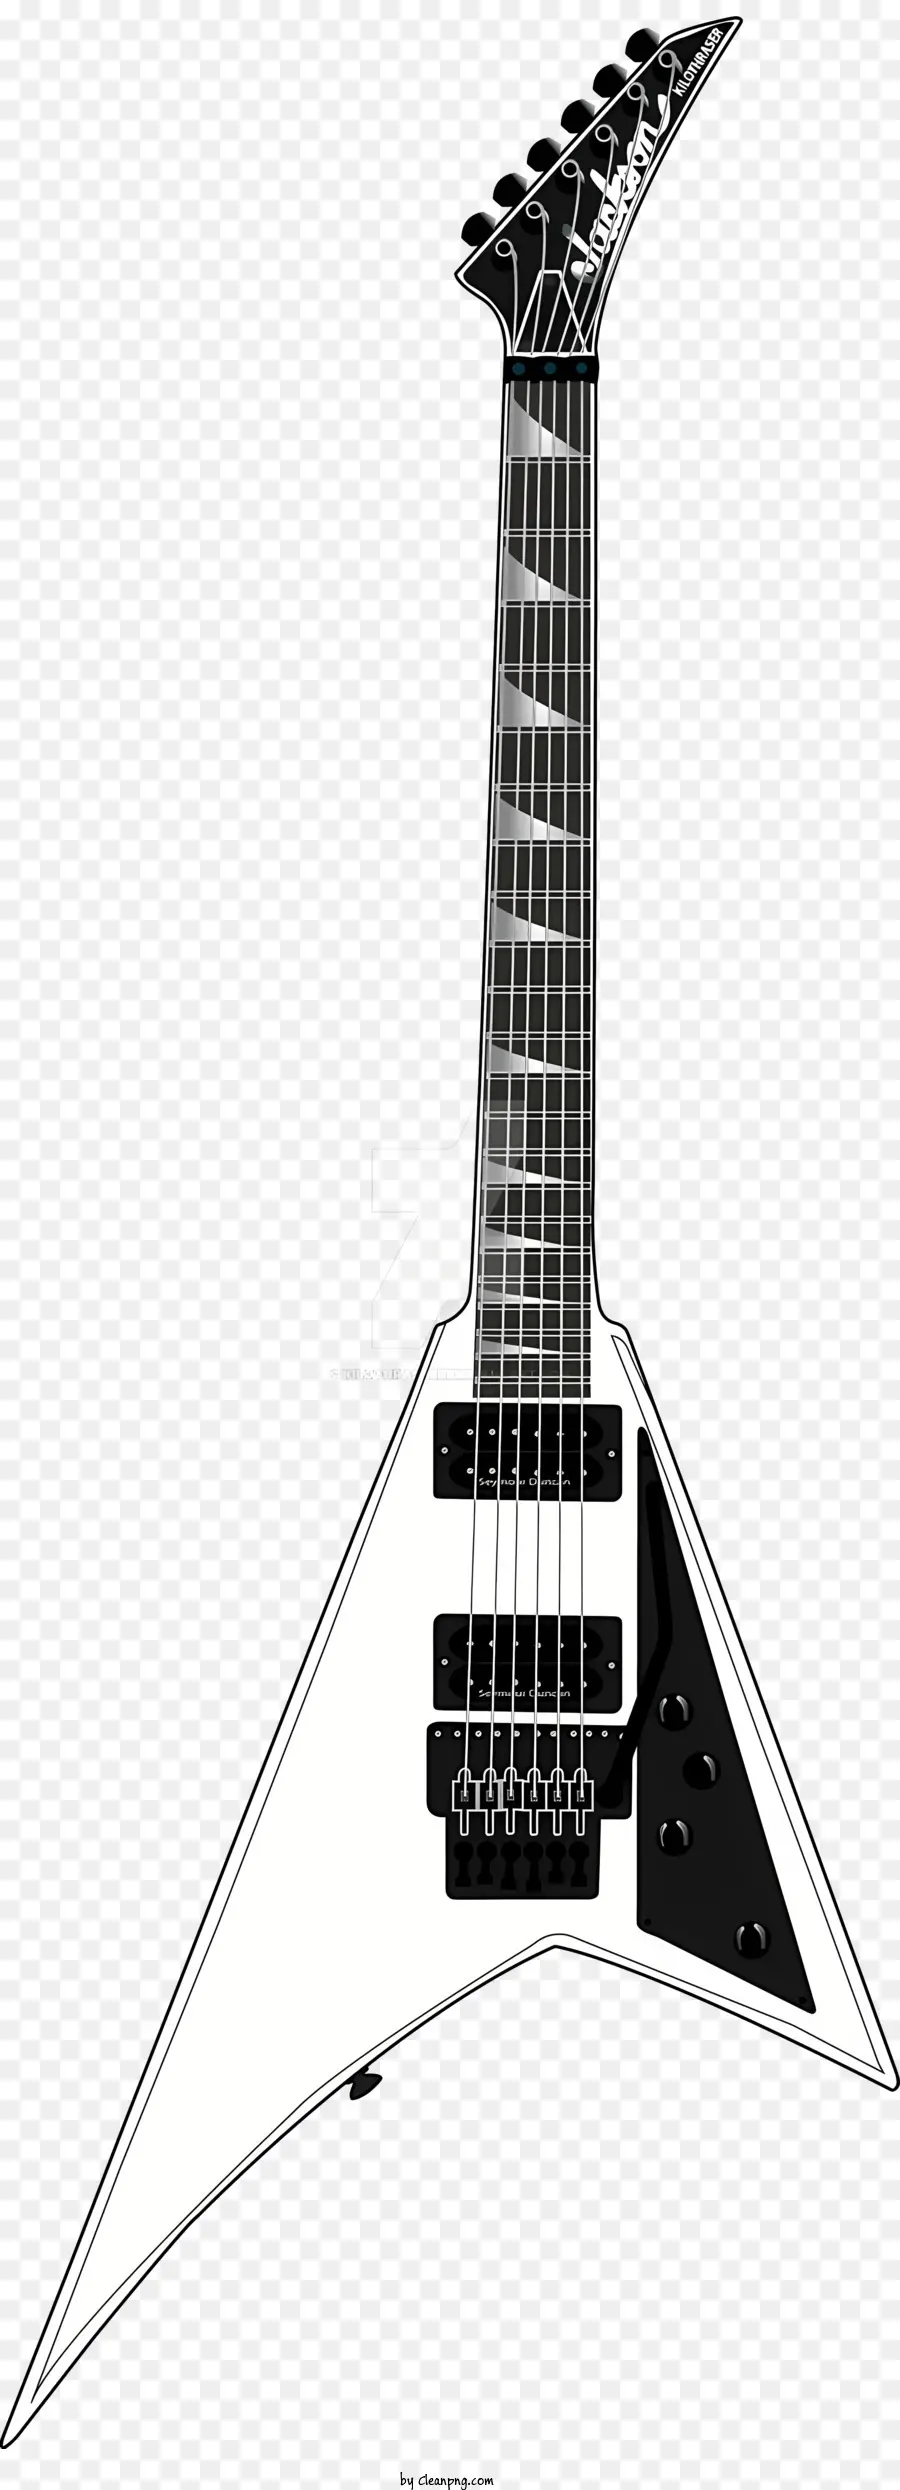 Musik Musikinstrument weißer Gitarre schwarzer Körperchrom -Griffbrett - Weiße Gitarre mit schwarzem Körper, Chrom -Griffbrett